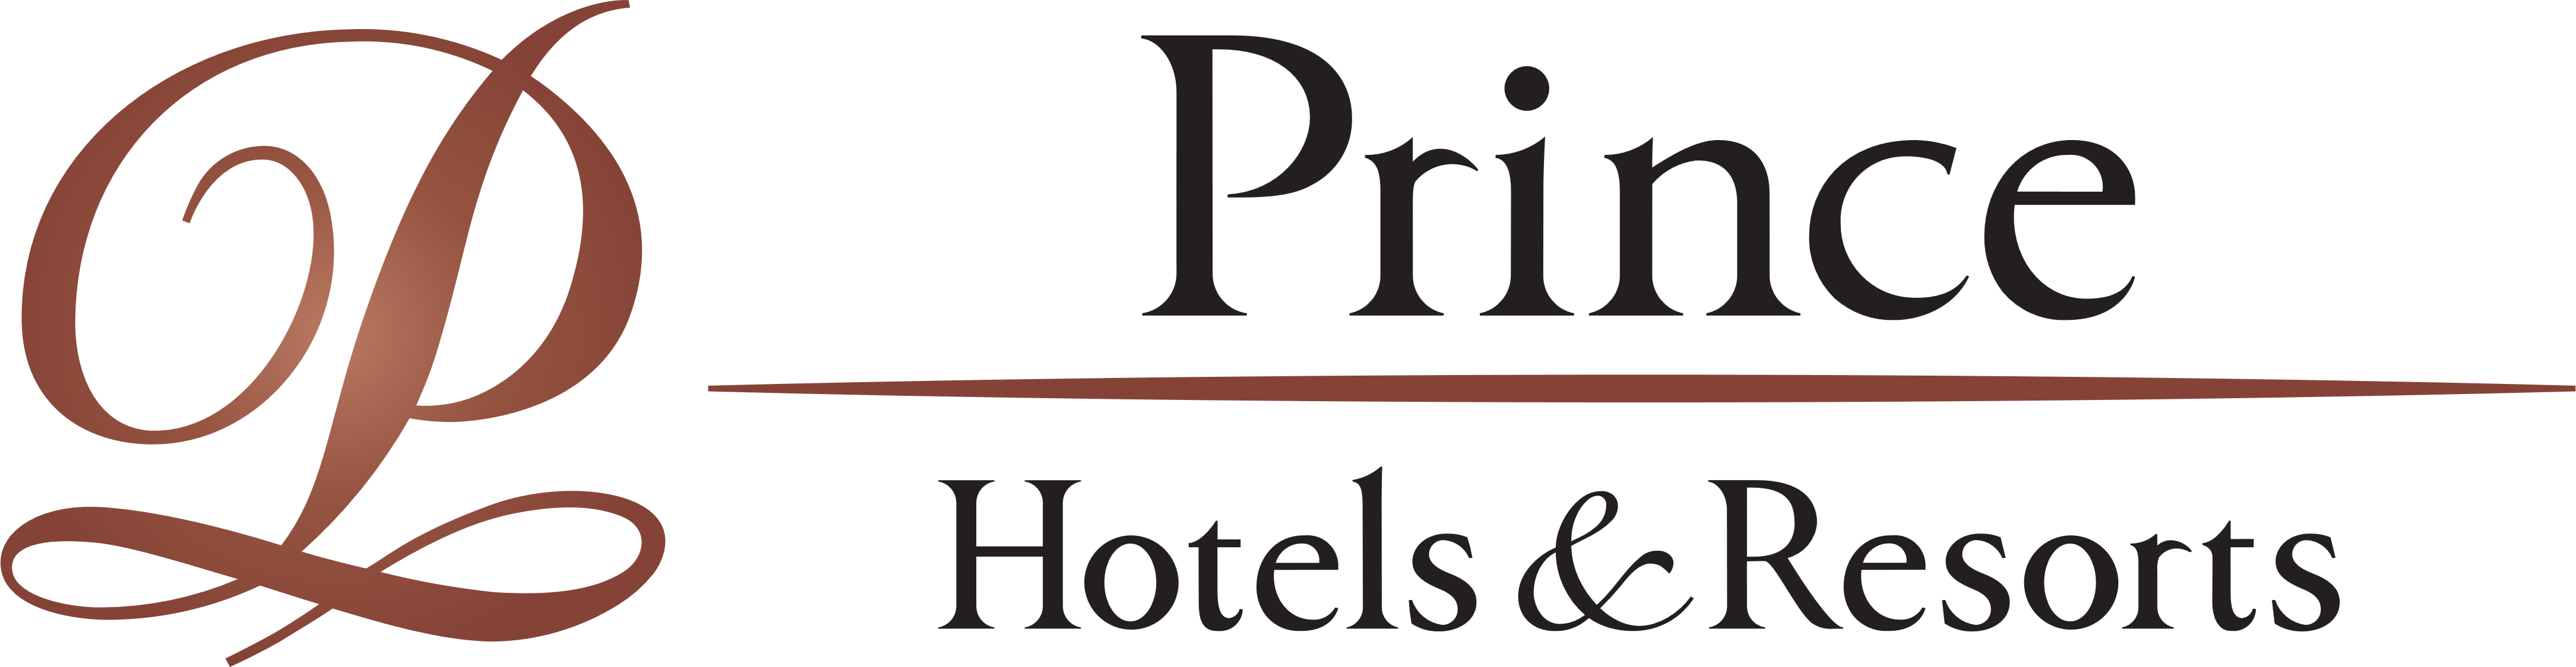 Hotels and Resorts Logo - Prince Hotels & Resorts – Logos Download